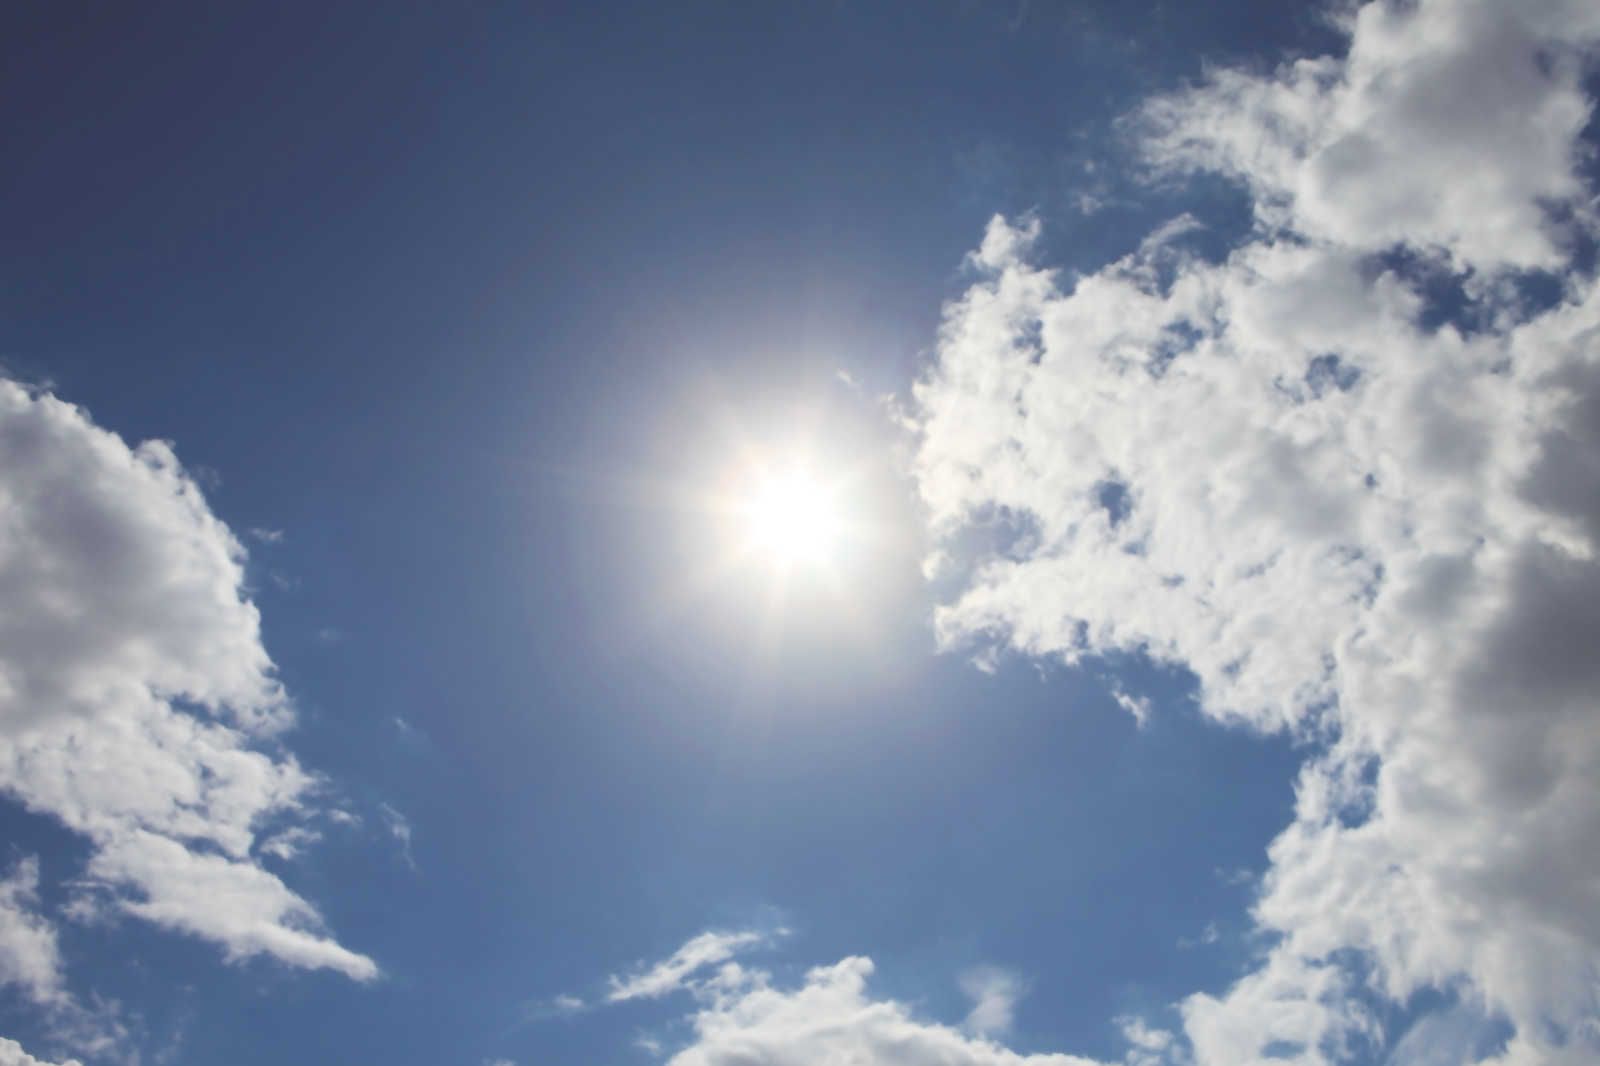             Himmel blau - Leinwandbild Sonnenschein & blauem Wolkenhimmel – 0,90 m x 0,60 m
        